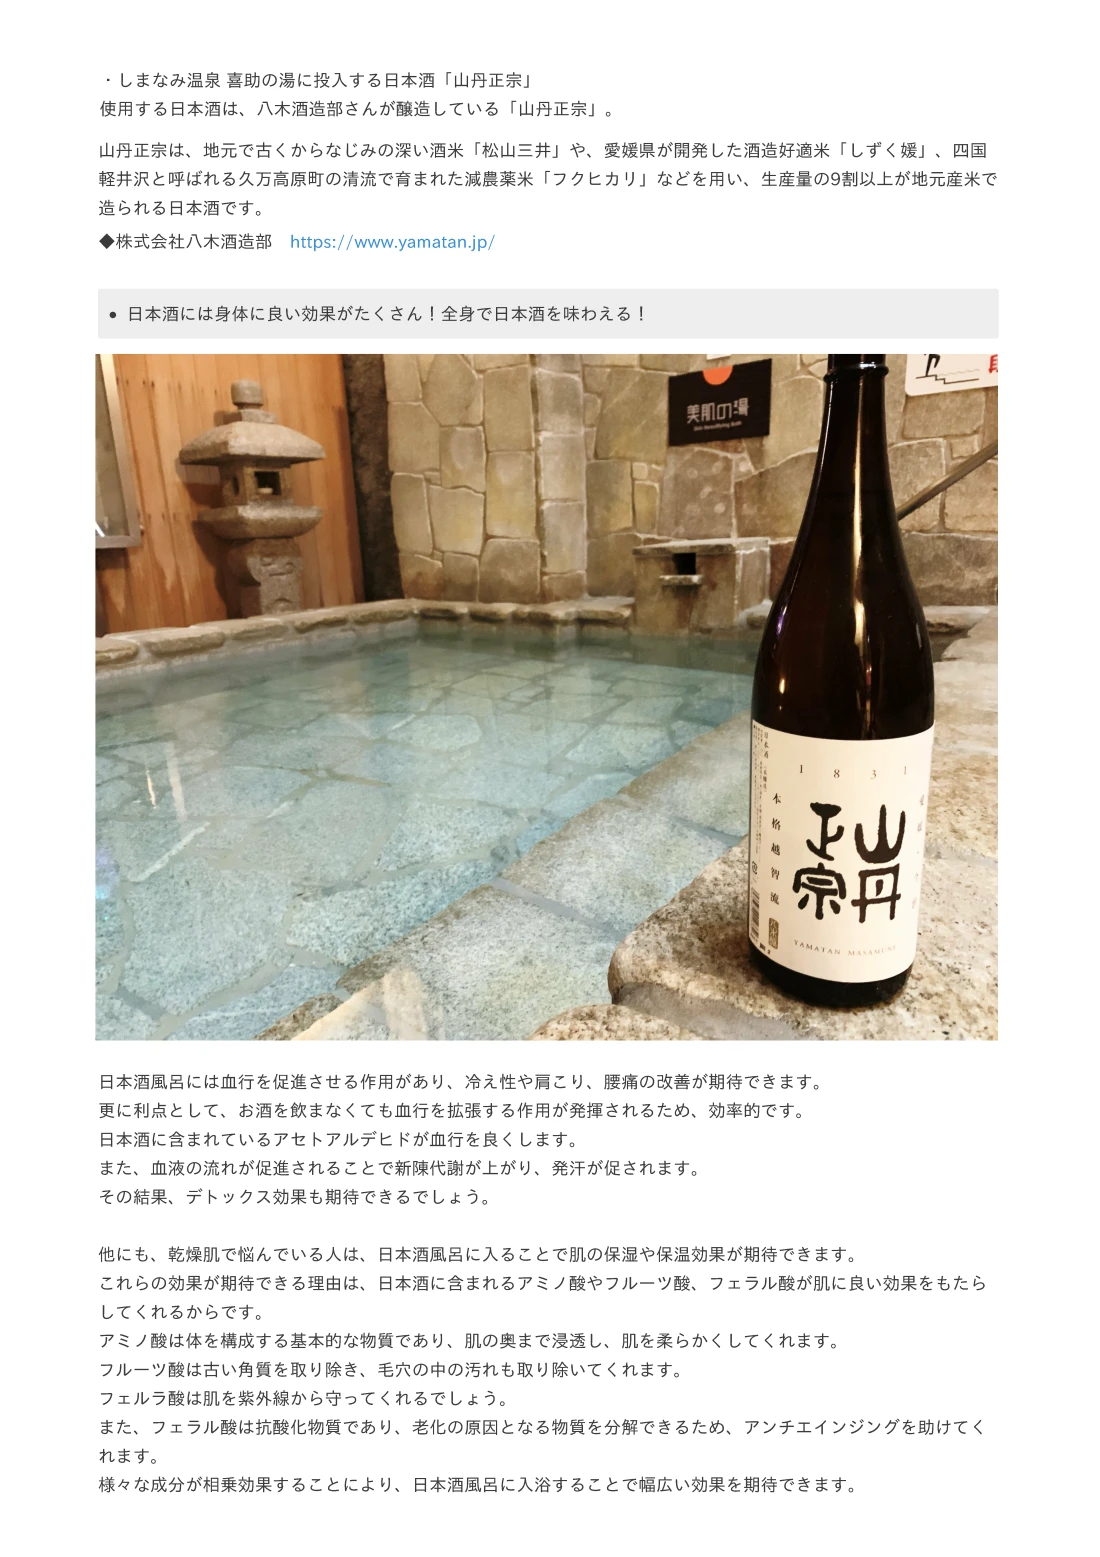 伊予の湯治場 喜助の湯で投入する日本酒「喜助」愛媛松山で120年以上日本酒造りをしている酒蔵「栄光酒造株式会社」とコラボした、日本酒「喜助」を使用。栄光酒造は、地元の美しい自然環境と恵まれた気候を守り、 古くから続く伝統的な酒造りの技術と最新の製法を融合させています。 厳選された良質な米と清水を使用し、丁寧な手作業で醸される日本酒の品質にこだわっており、 醸造には、伝統的な製法を守りつつ、新たな技術や研究もされており、 その結果、栄光酒造の日本酒は、豊かな味わいと香り、そしてスムーズな口当たりが特徴となっています。 地域の特産品である愛媛県産の酒米を使った日本酒を中心に、様々な銘柄を製造しており、 地元の人々や観光客から広く愛されています。 